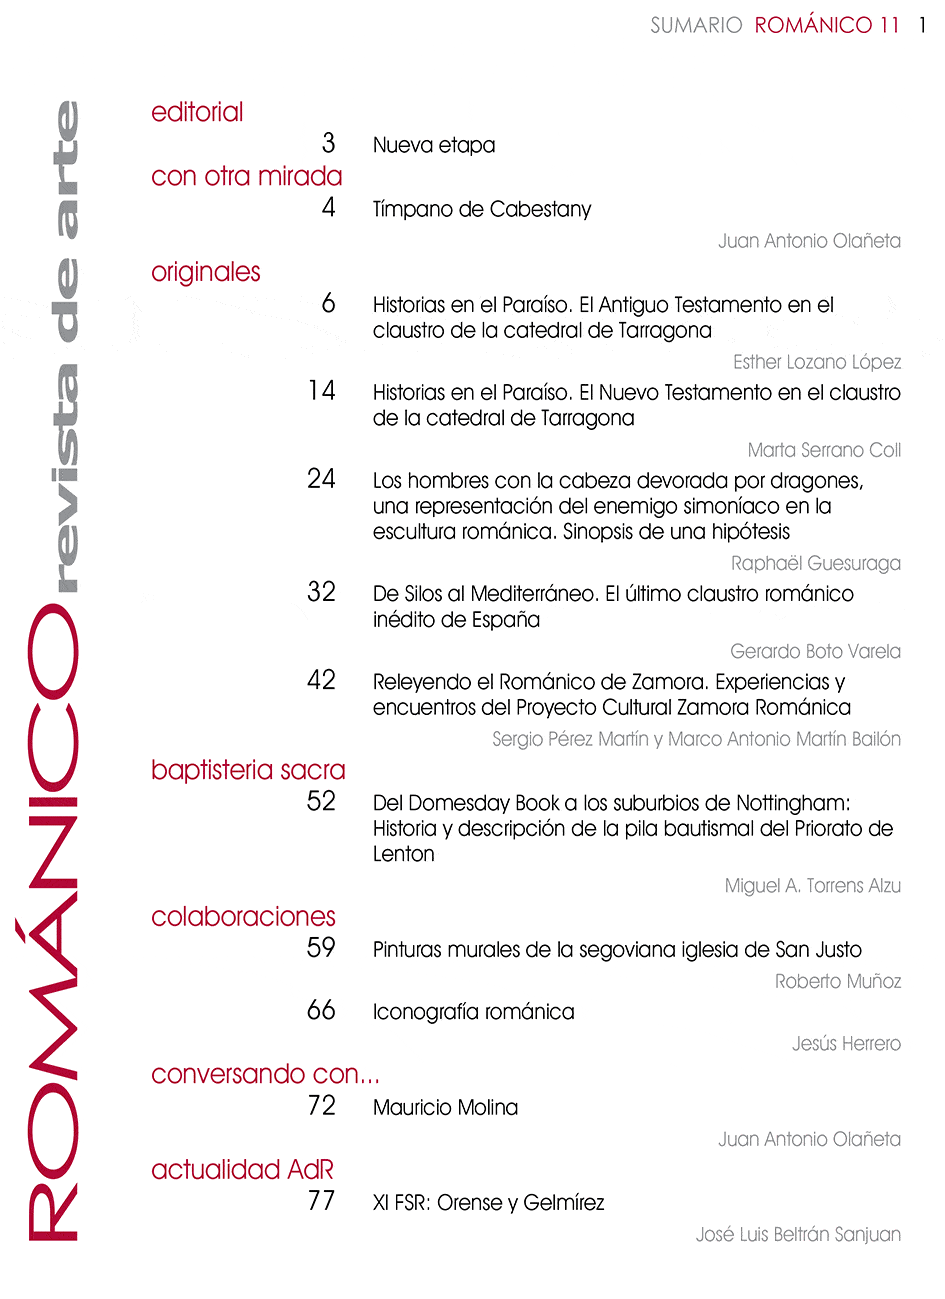 Indice de Contenidos Revista Amigos del Románico Nº11